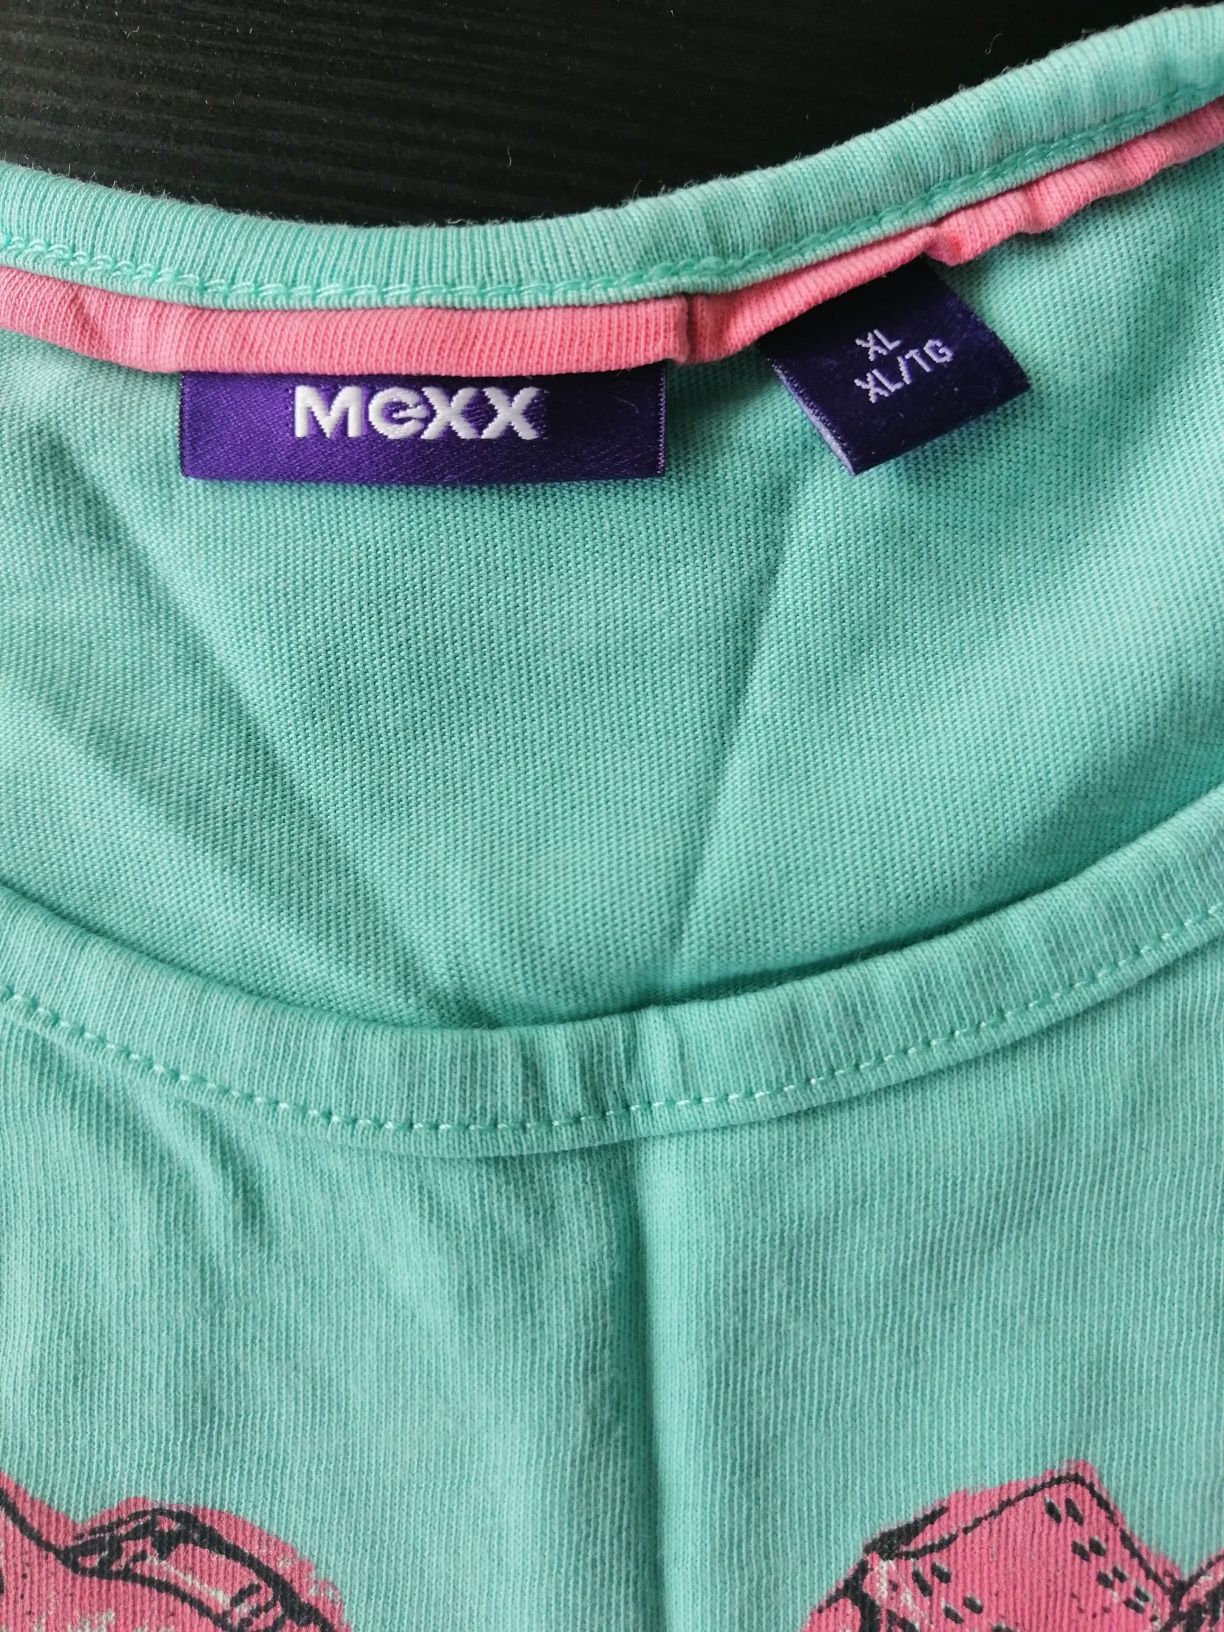 Bluzka dla dziewczynki Mexx 134 140